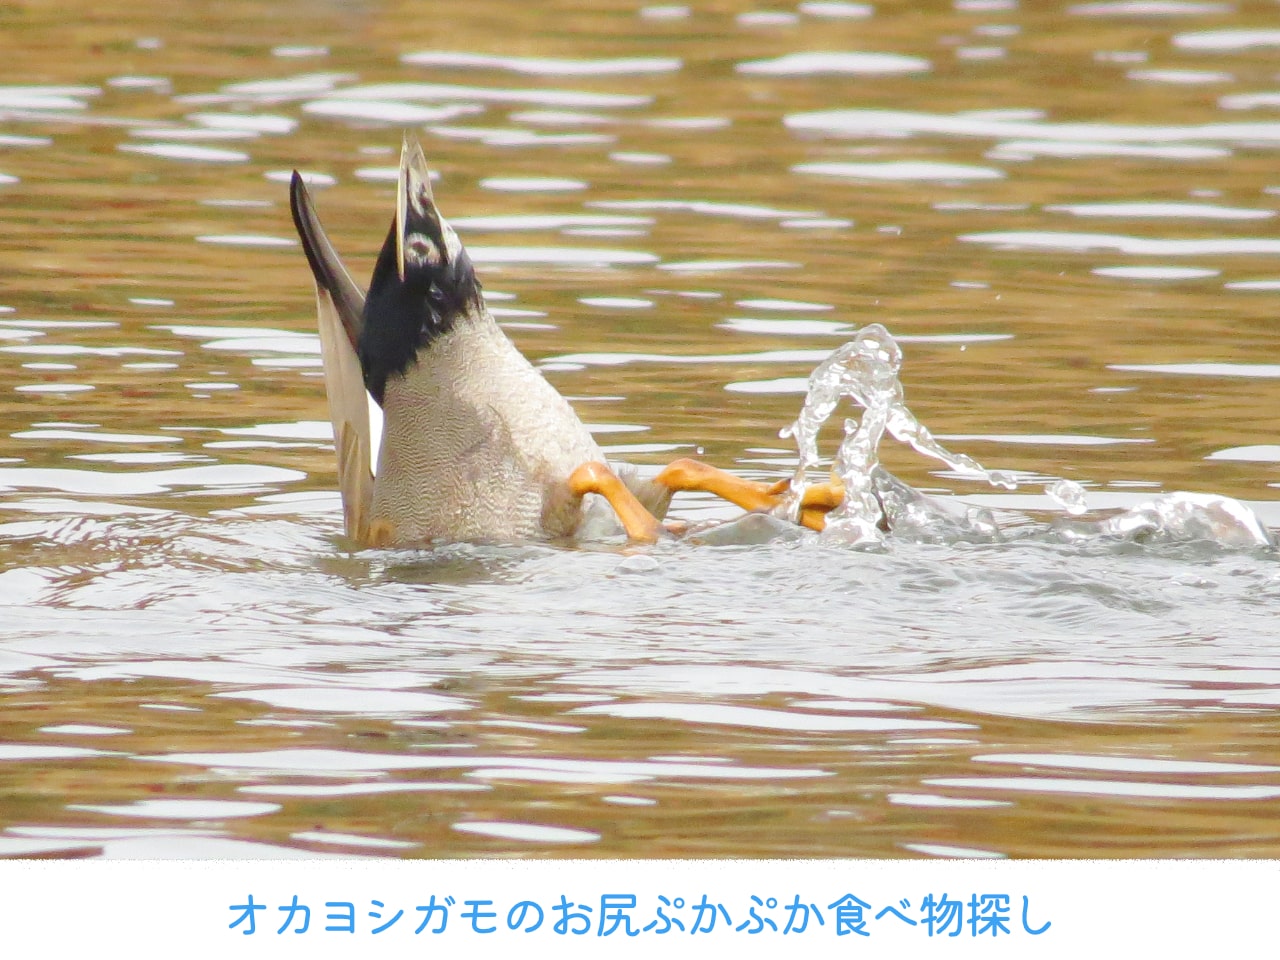 お尻を浮かせながら、水中の食べ物を探すオカヨシガモの画像